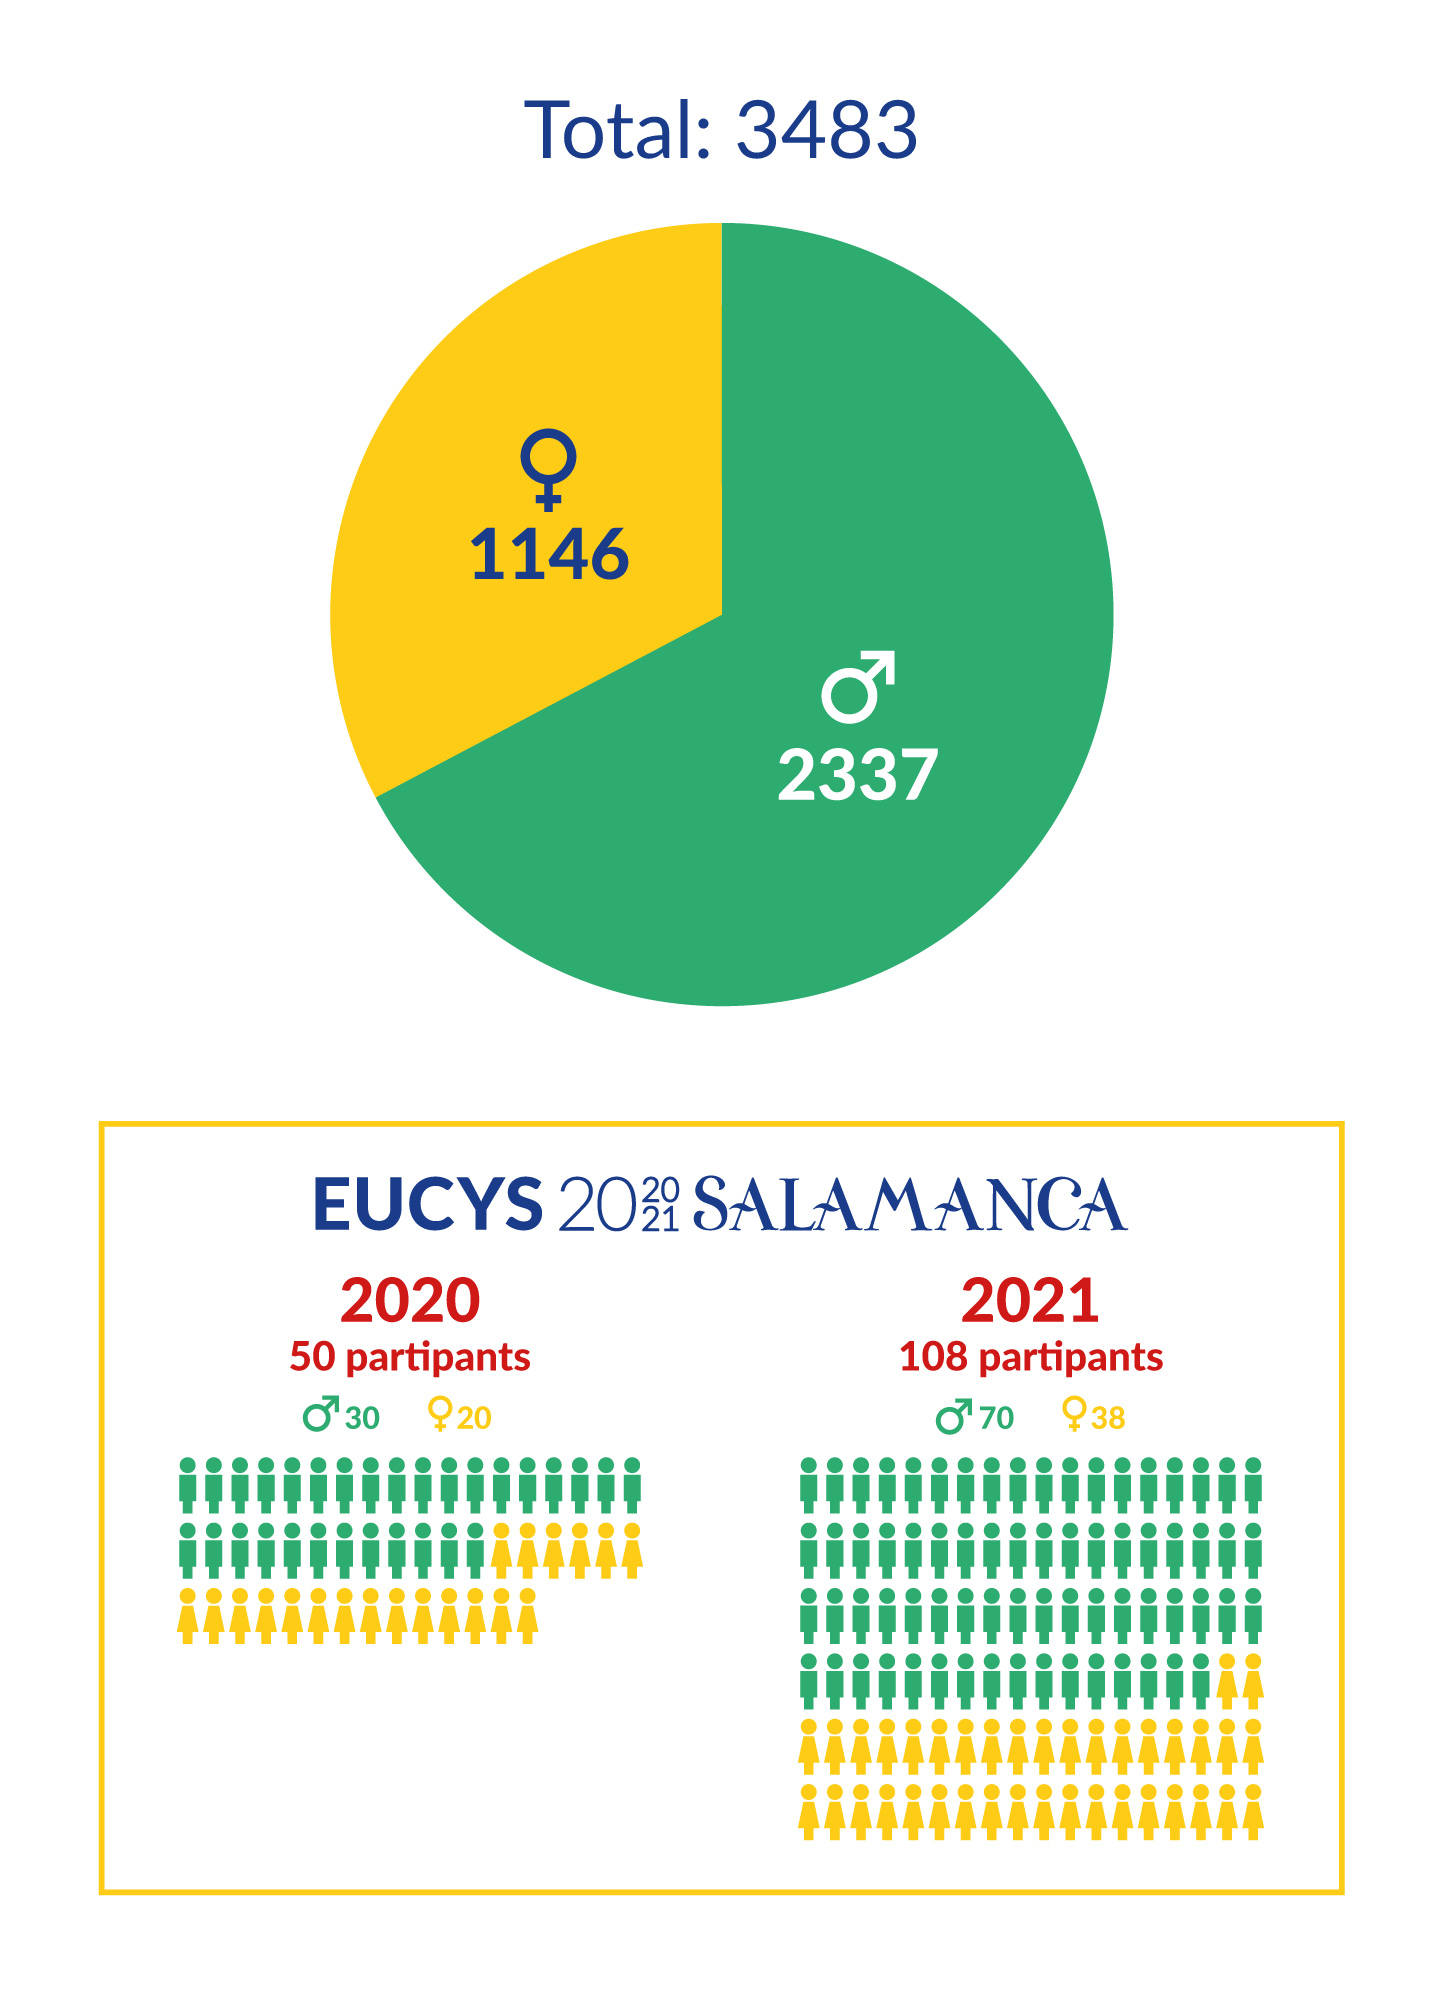 Participantes EUCYS por género 1989-2021